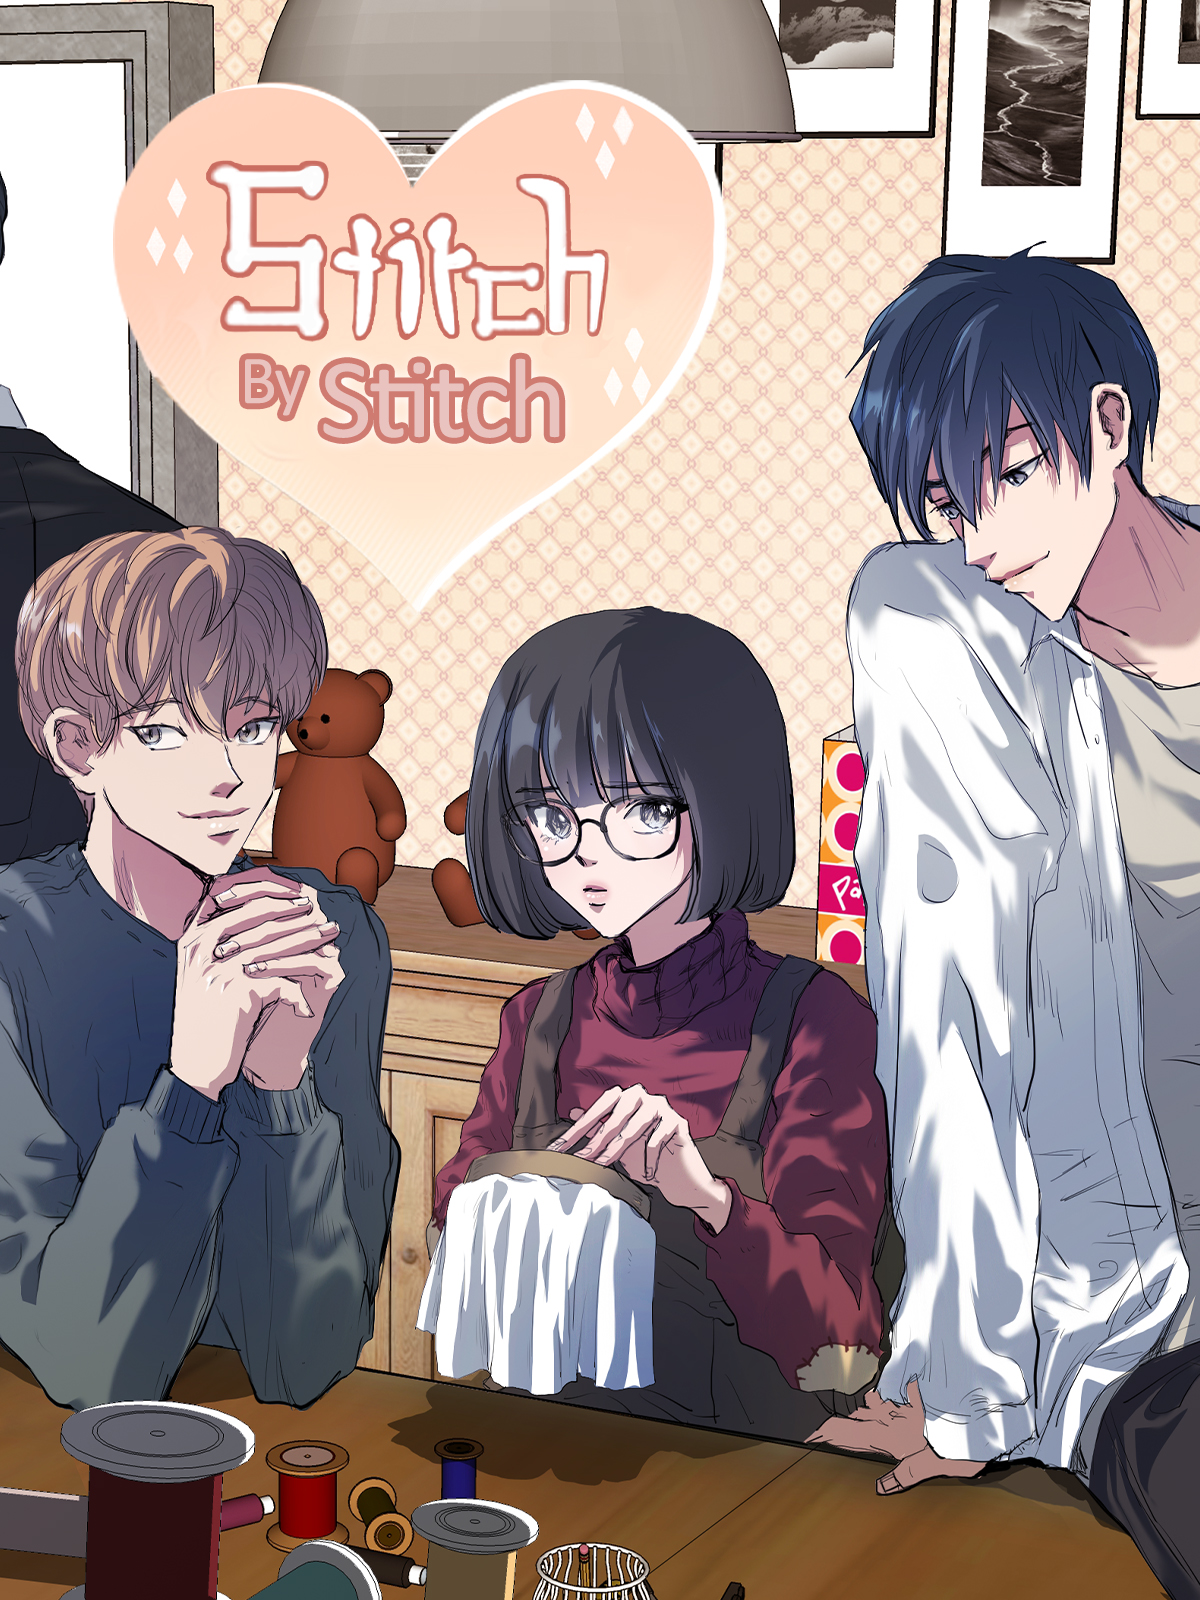 Stitch by Stitch Manga